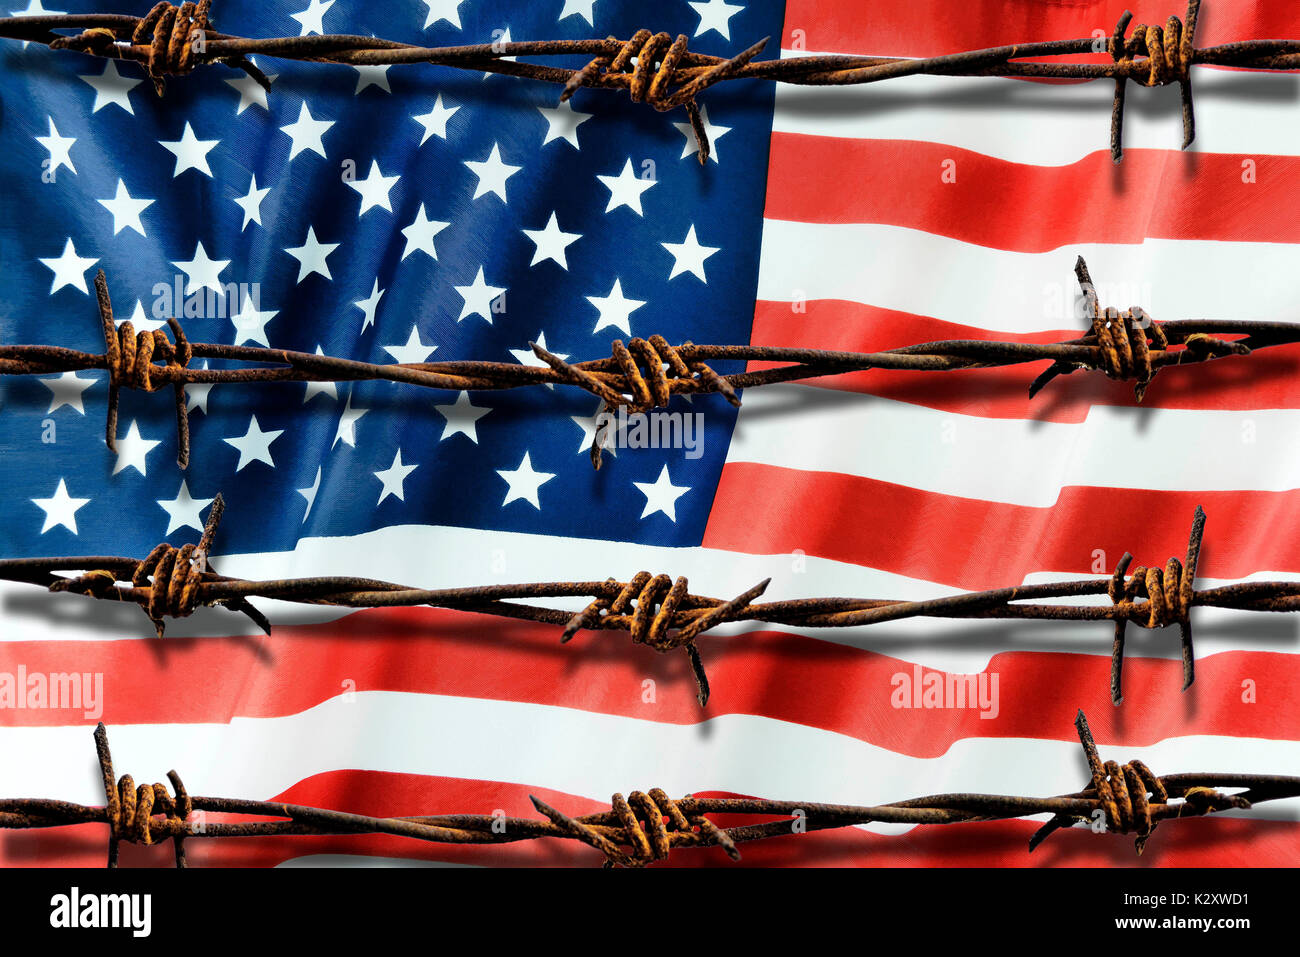 Flagge der USA hinter Stacheldraht, symbolische Foto Protektionismus, die Fahne der USA hinter Stacheldraht, Symbolfoto Protektionismus Stockfoto